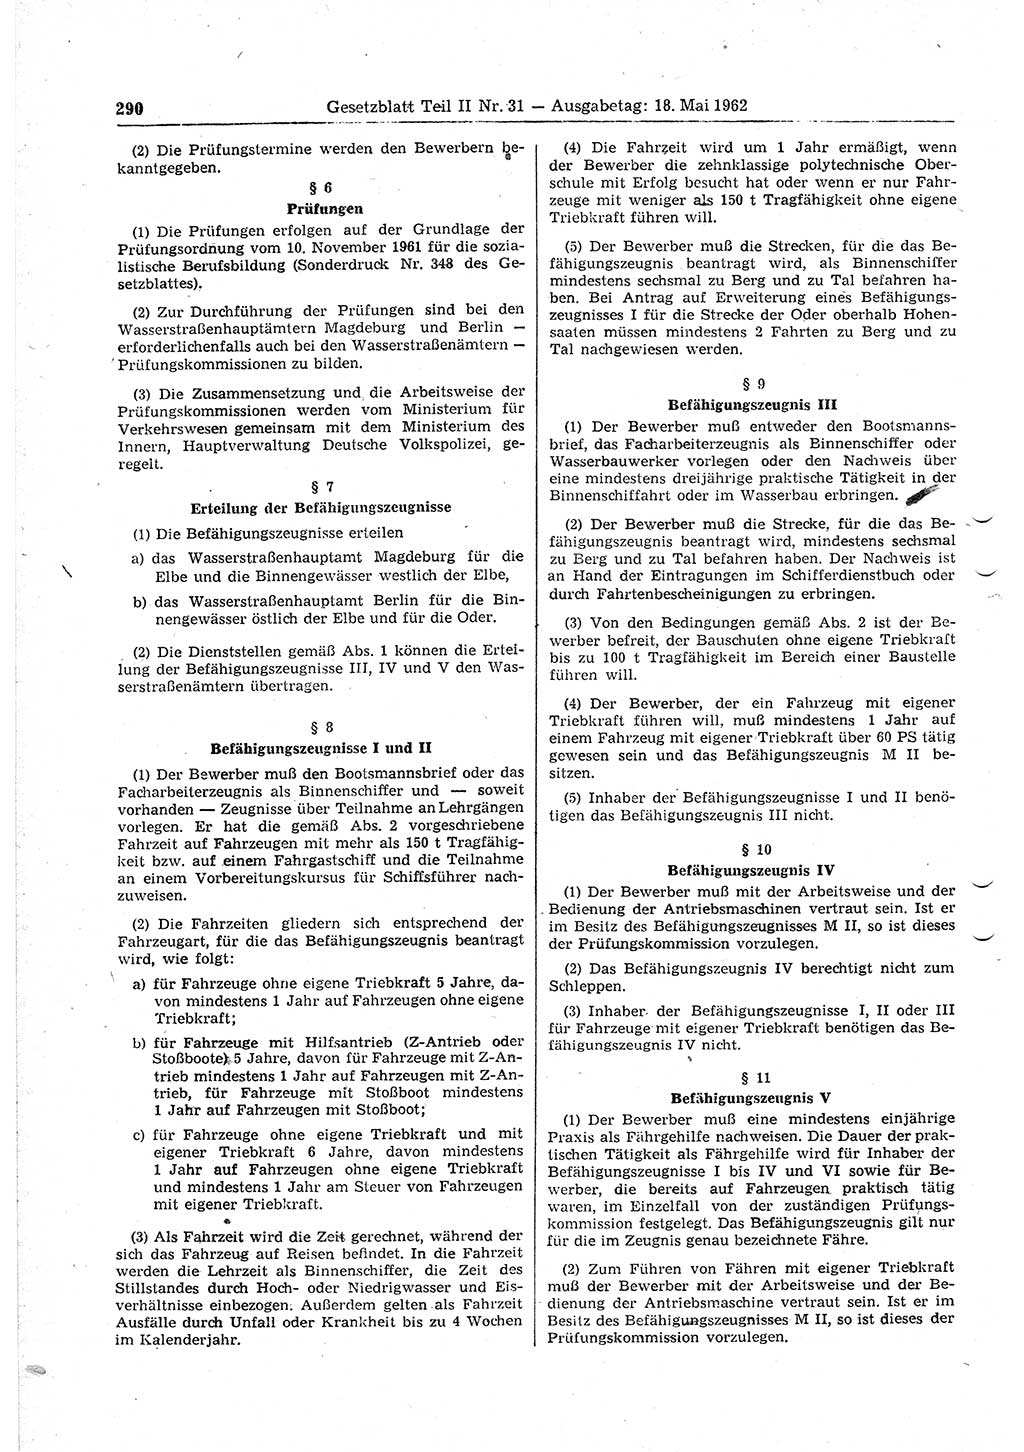 Gesetzblatt (GBl.) der Deutschen Demokratischen Republik (DDR) Teil ⅠⅠ 1962, Seite 290 (GBl. DDR ⅠⅠ 1962, S. 290)